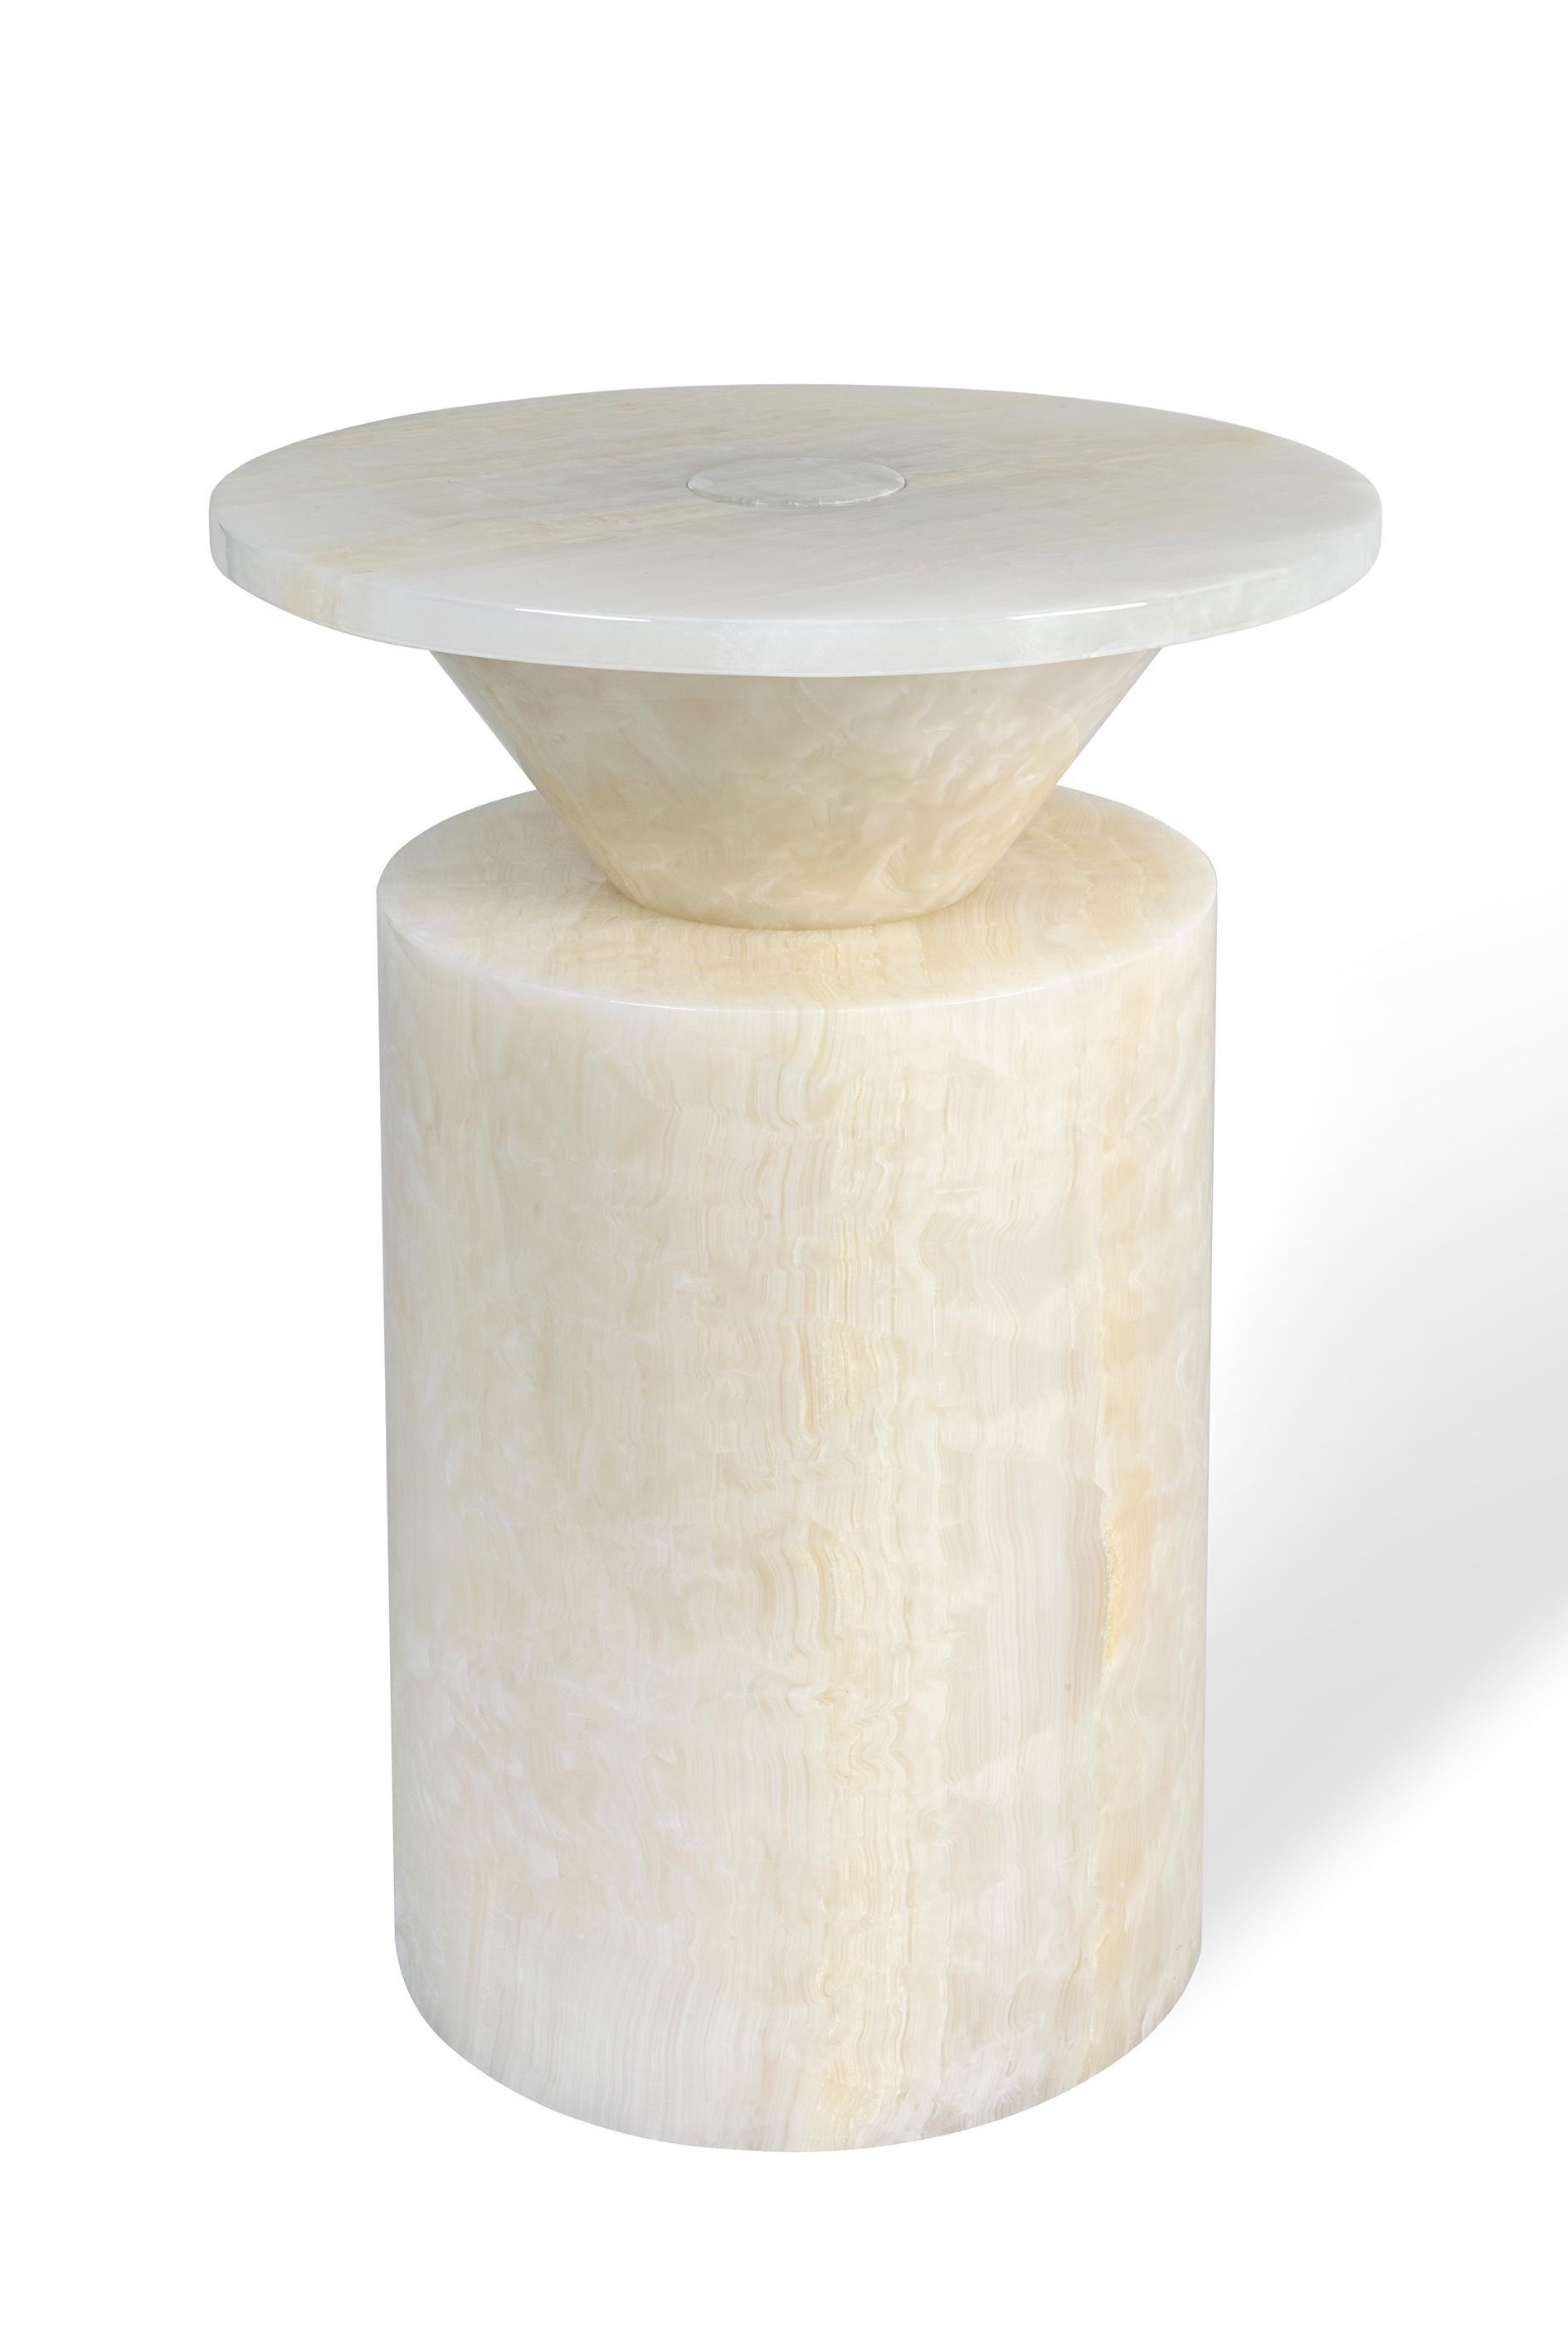 New Modern Side Table in White Onyx, creator Karen Chekerdjian